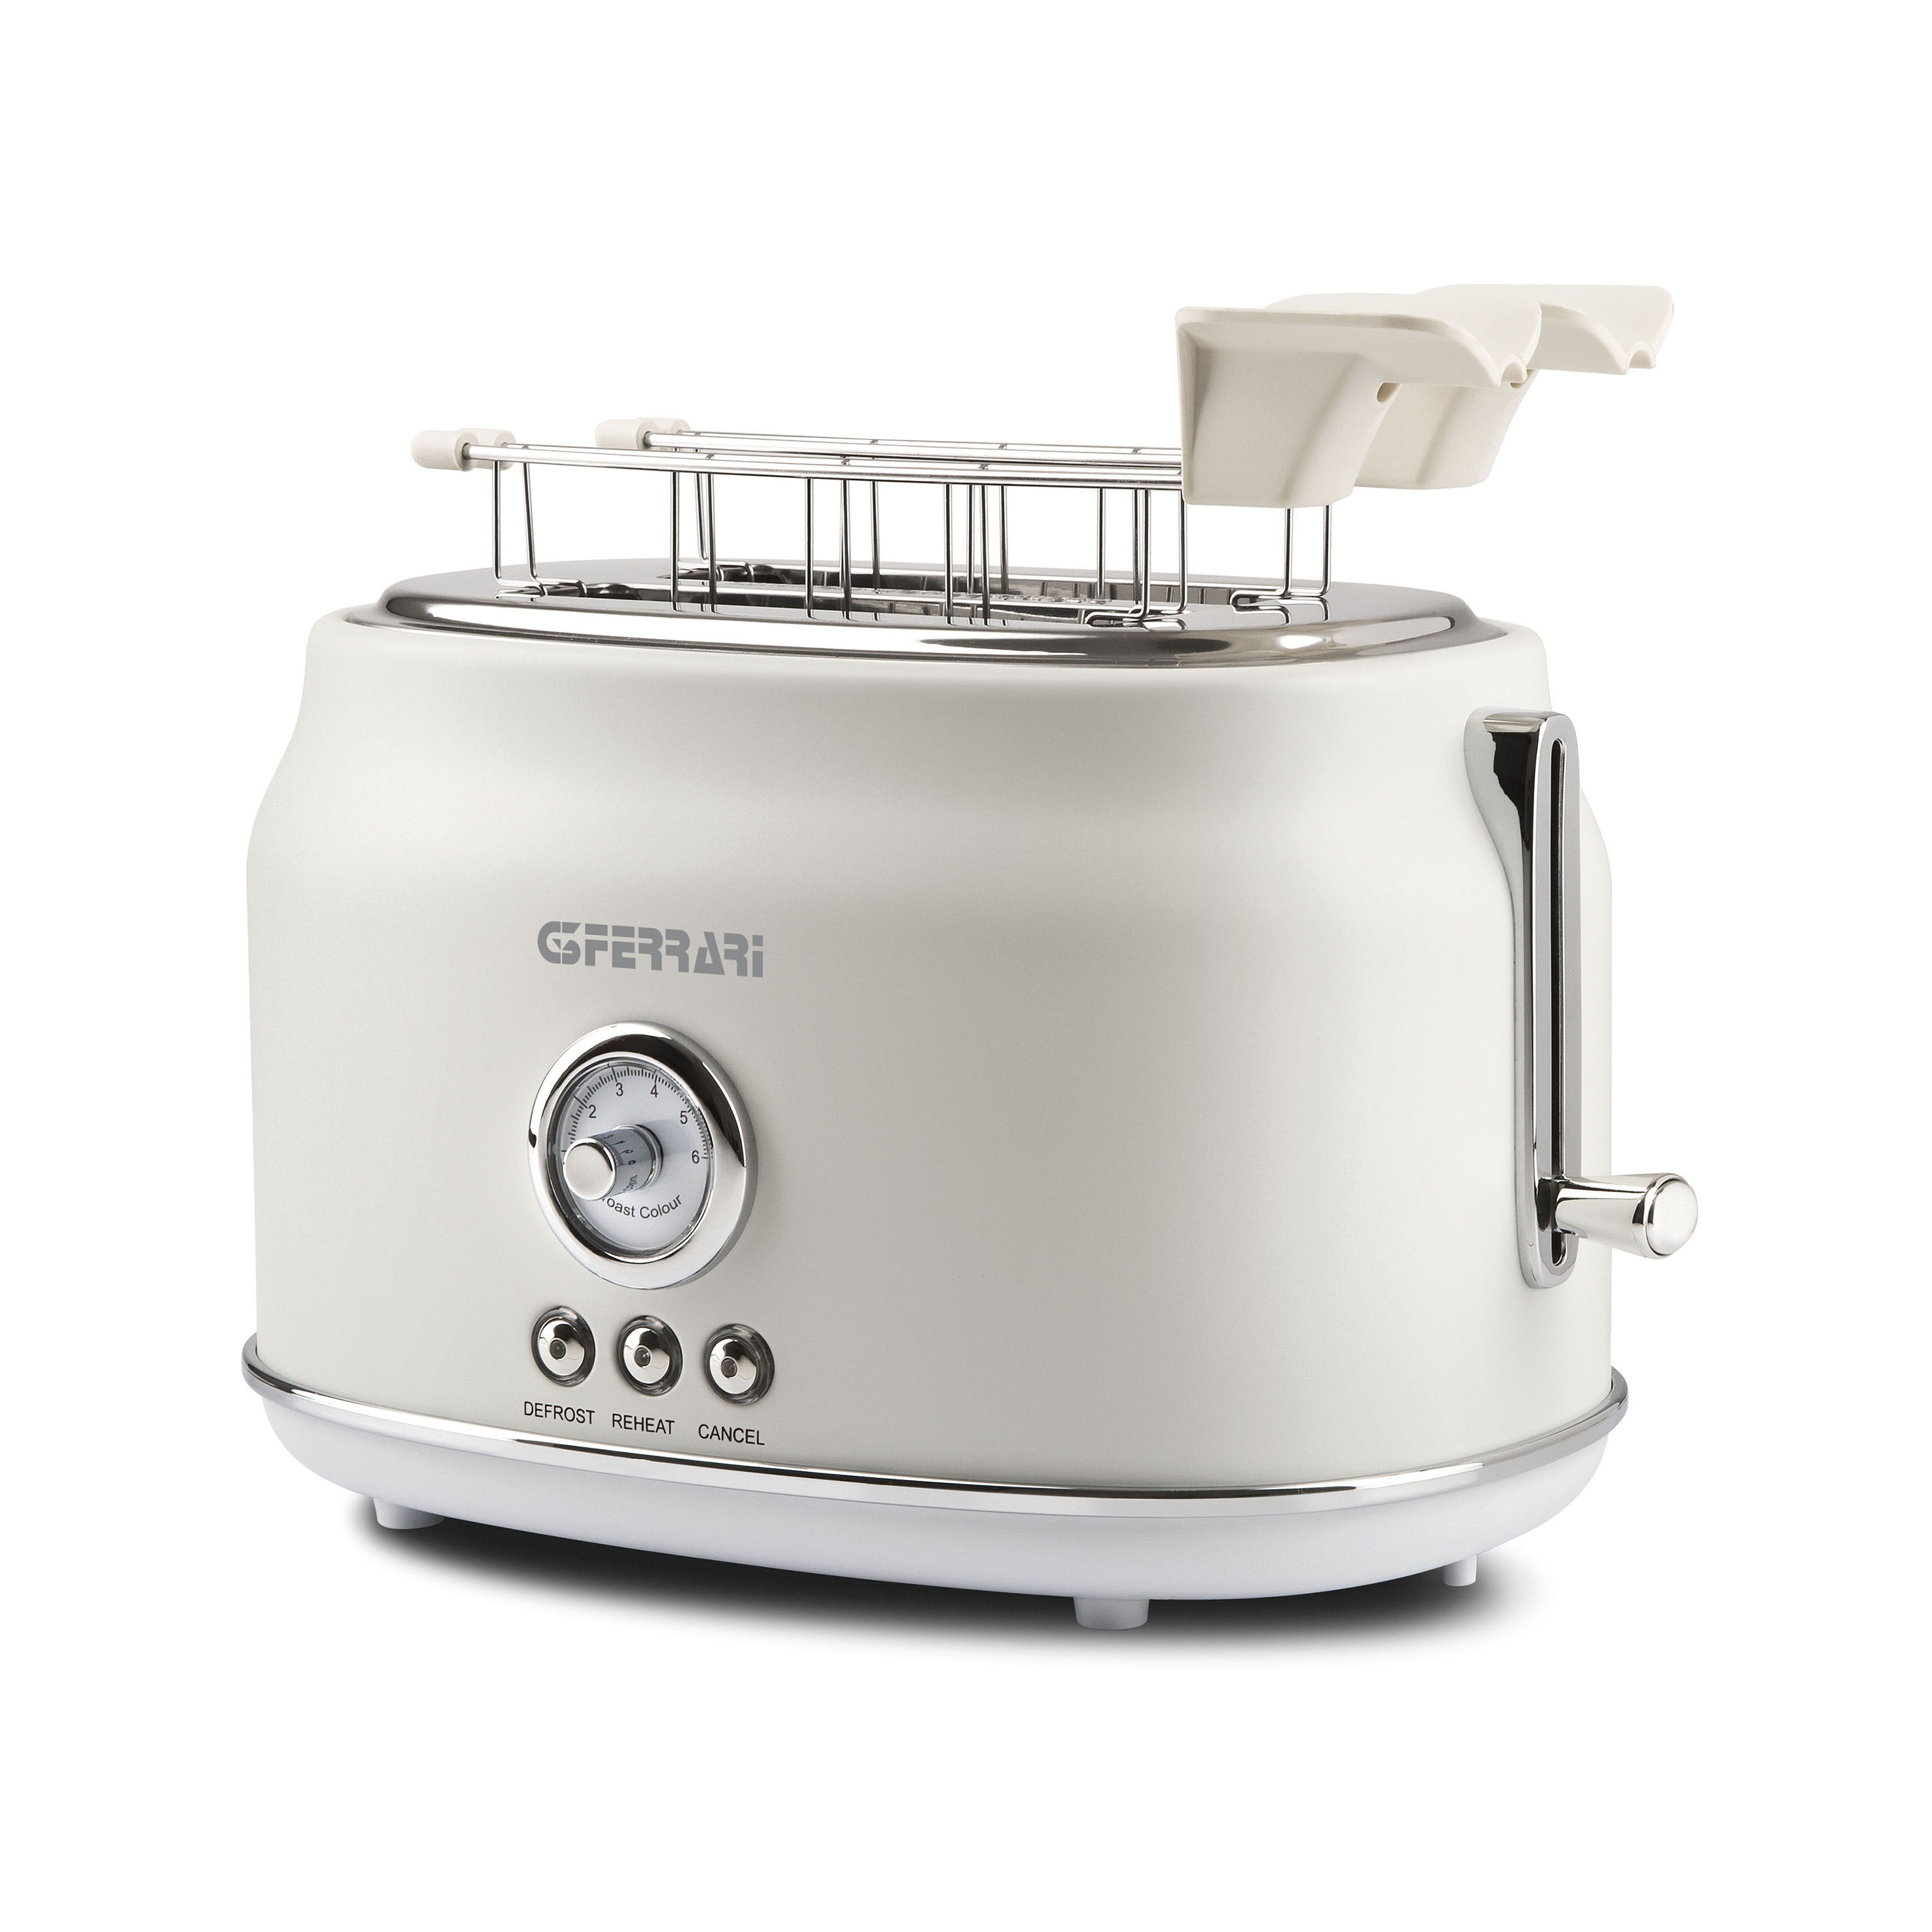 G1013401, Artista, toaster, 2 pliers, max 815W, white